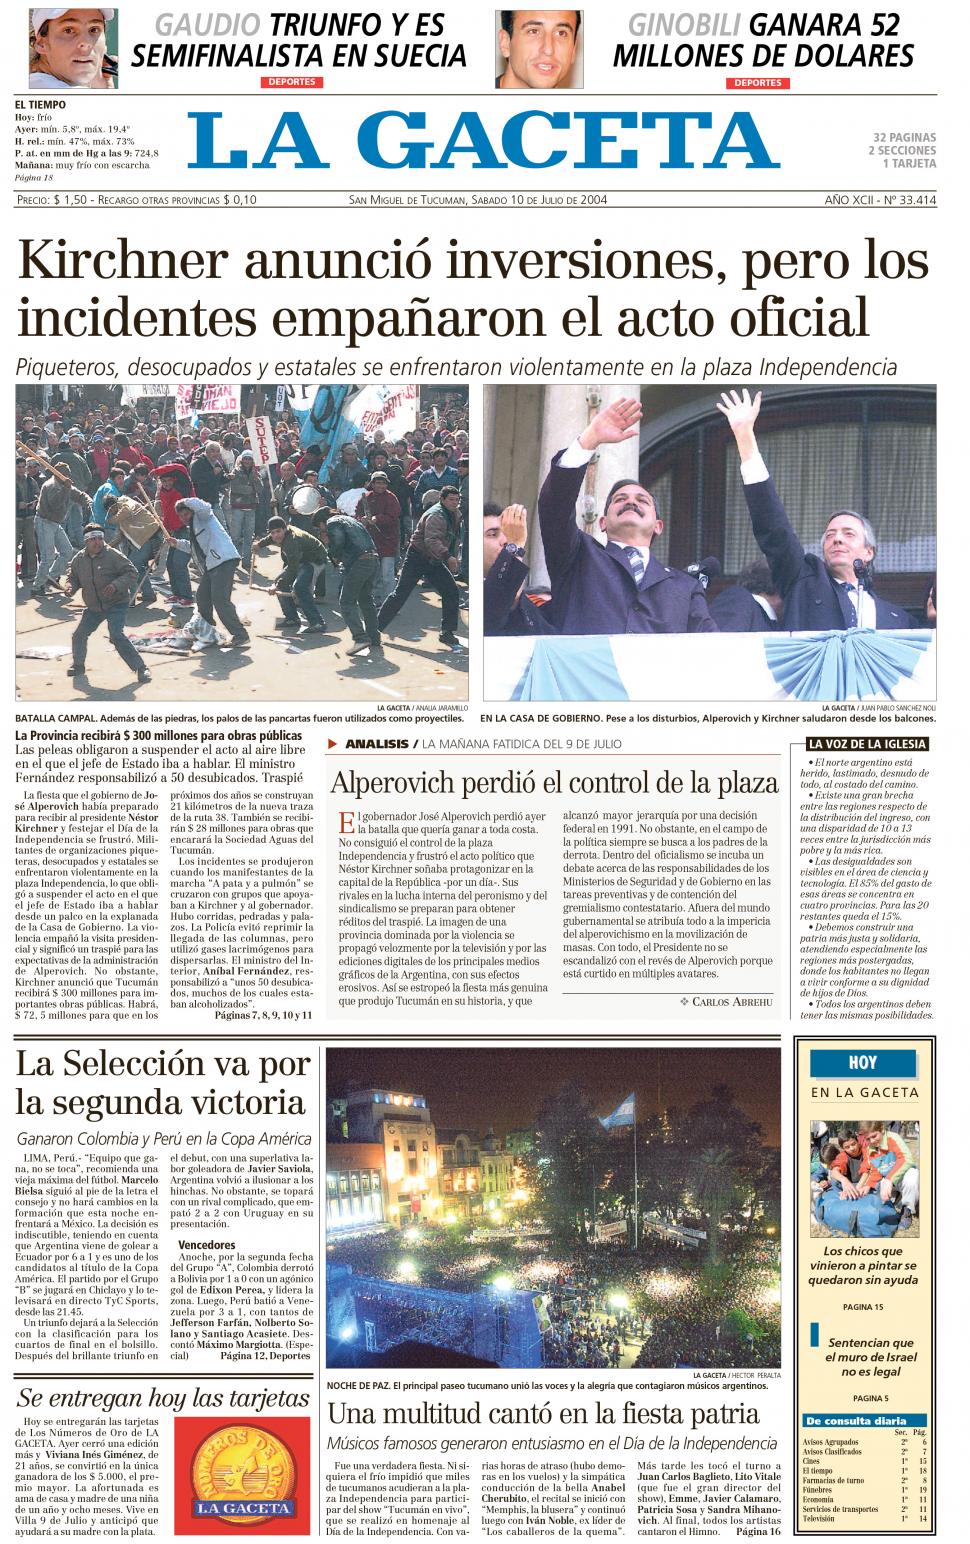 2004. Mientras Kirchner y Alperovich saludaban, en una zona de la plaza chocaban grupos de manifestantes.